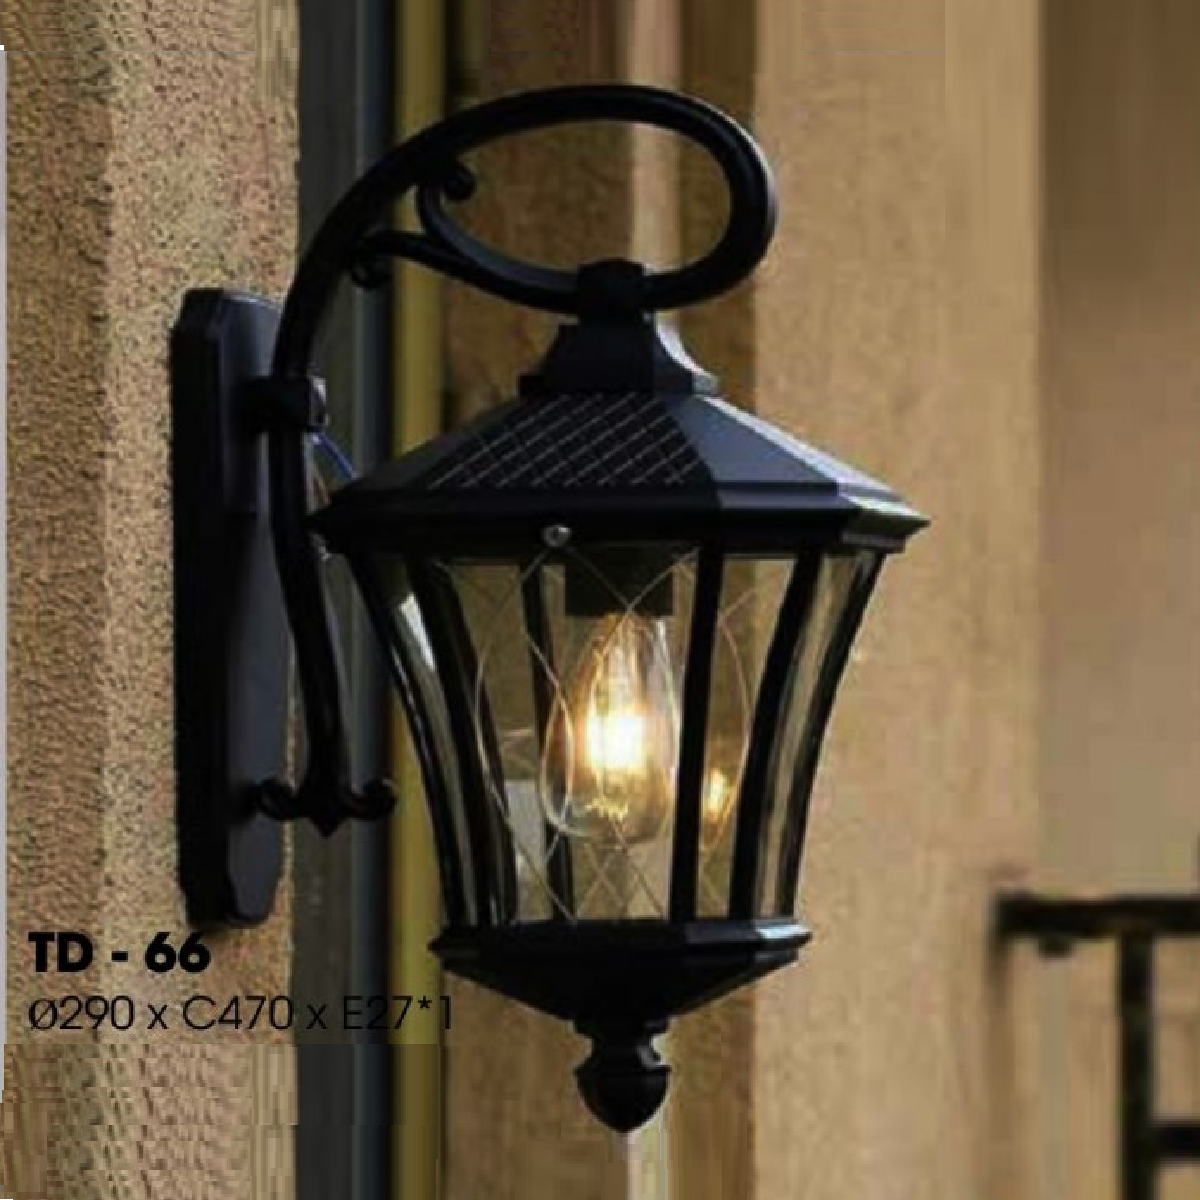 TD - 66: Đèn gắn tường ngoài trời - KT: Ø290mm x H470mm - Bóng đèn E27 x 1 bóng